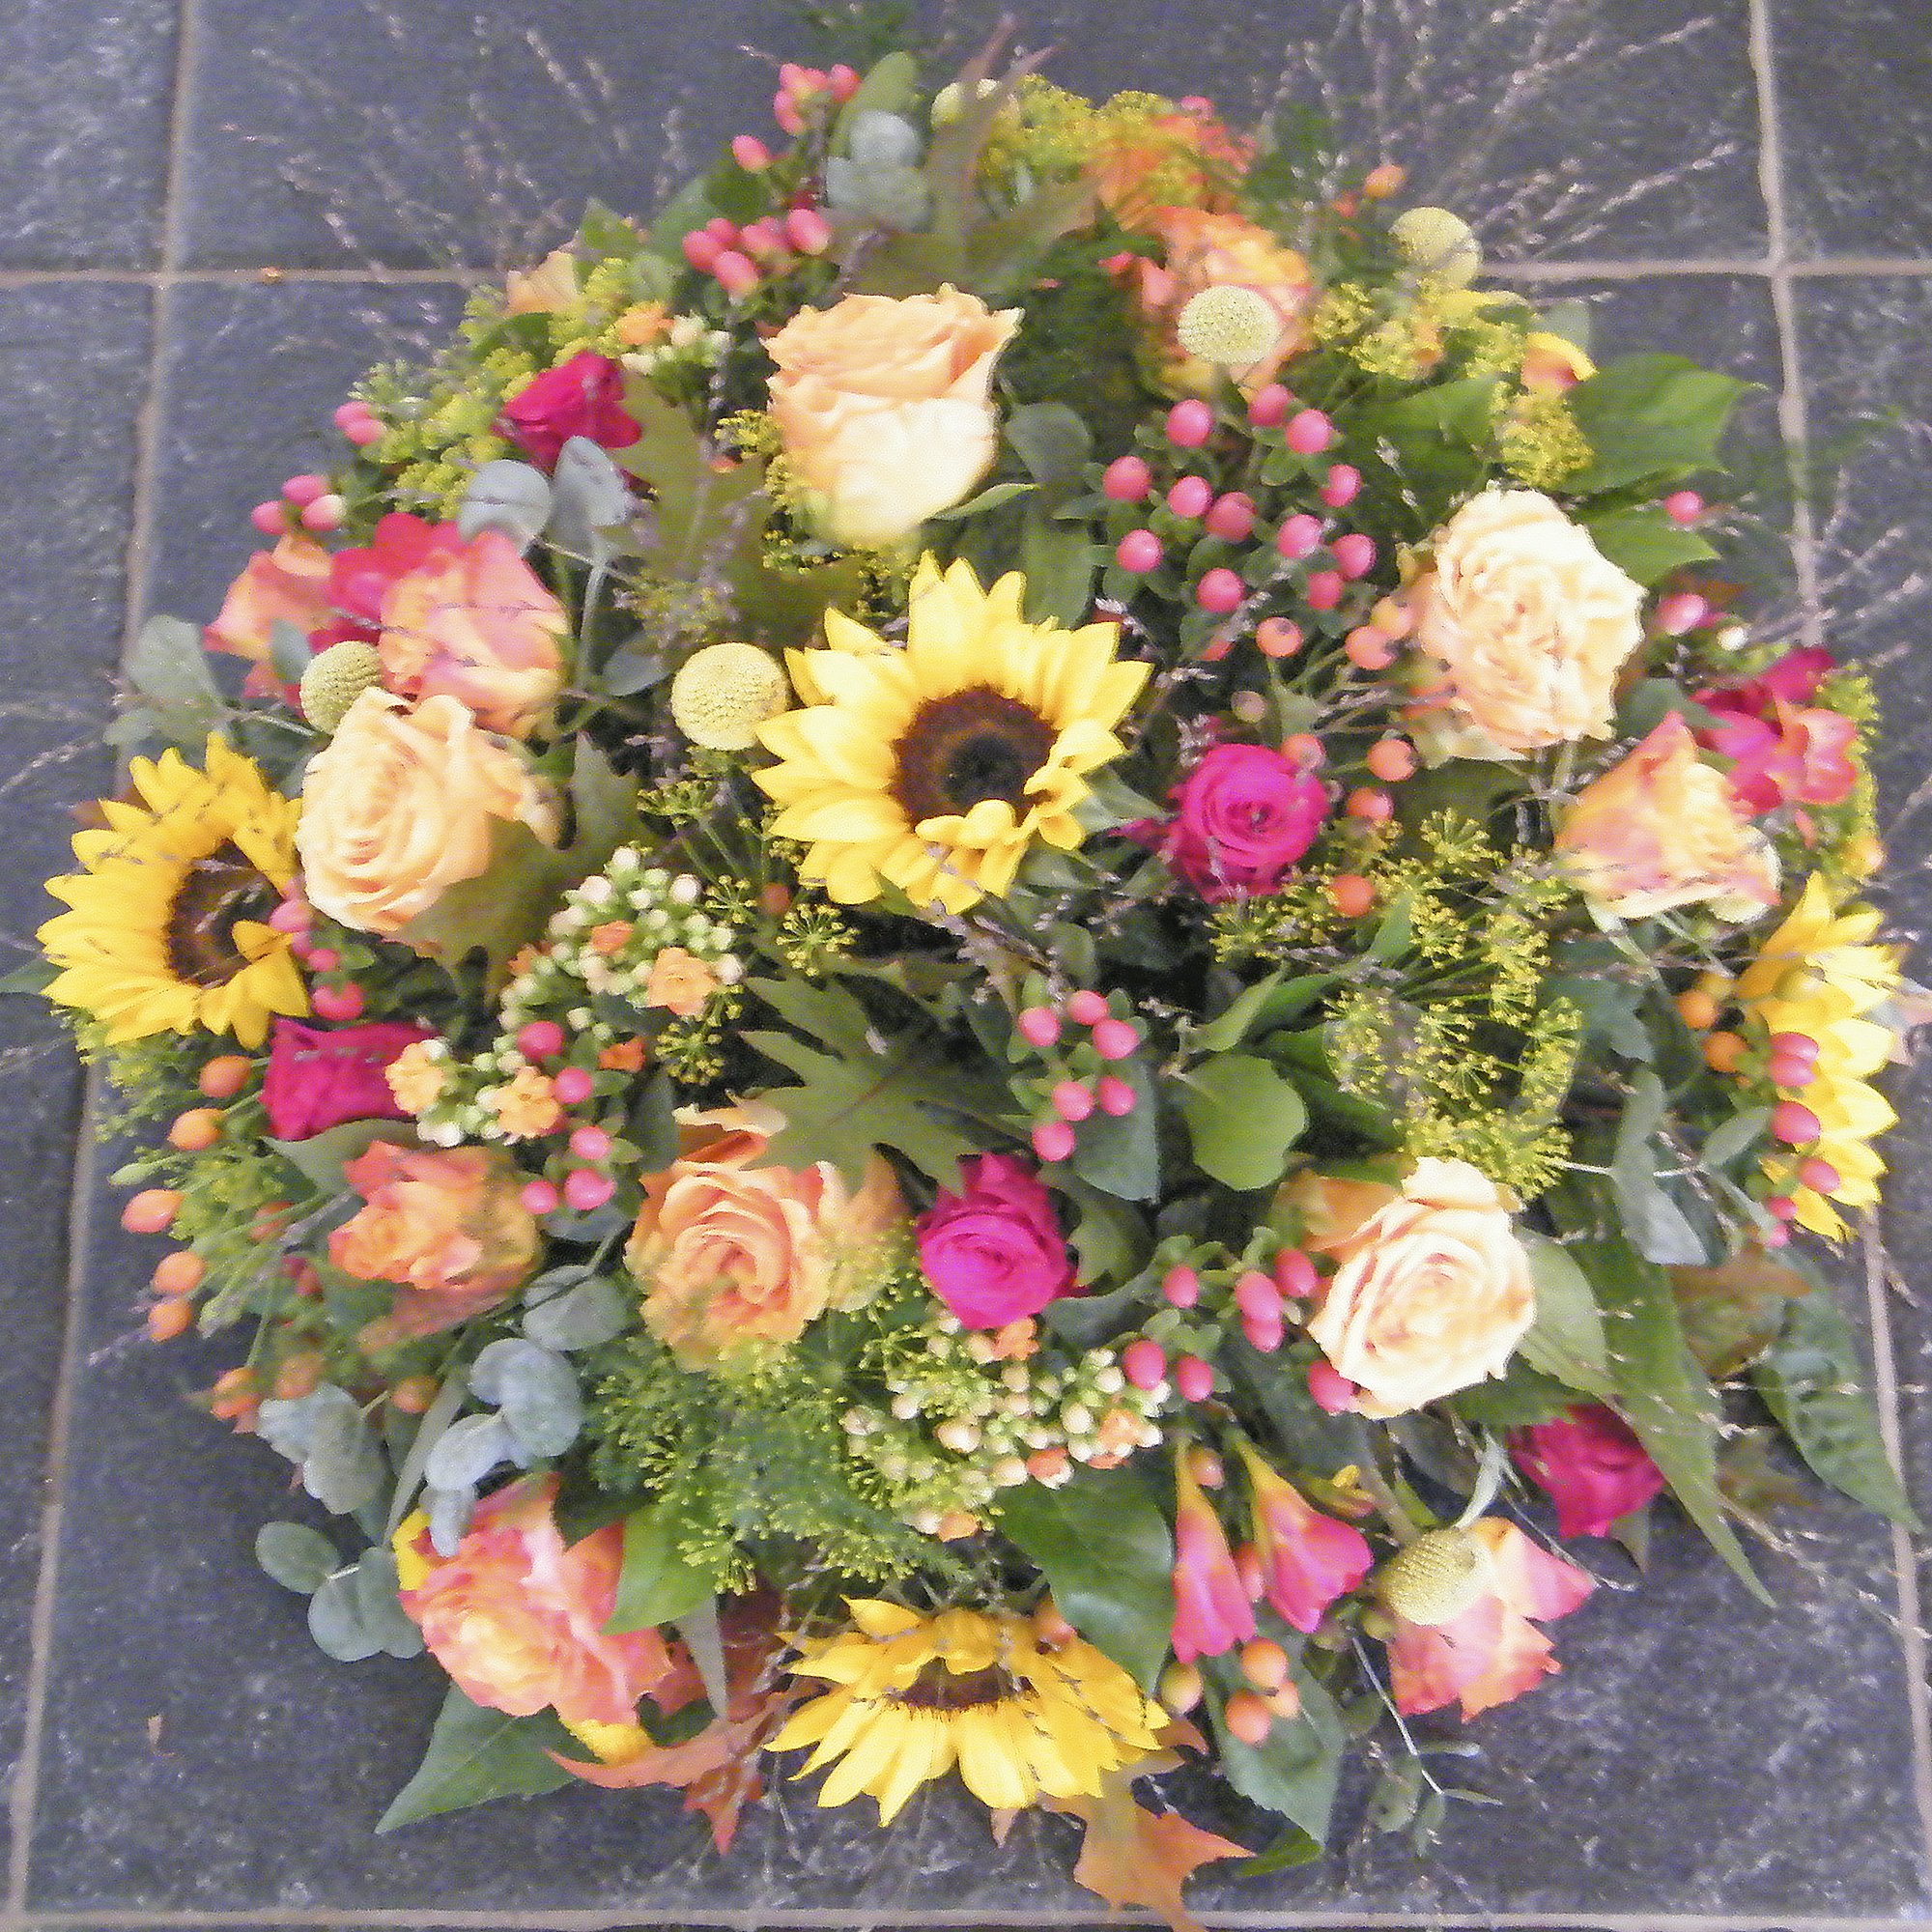 de Kracht van Bloemen- bloemen bij overlijden- afscheidsbloemen  21.jpg